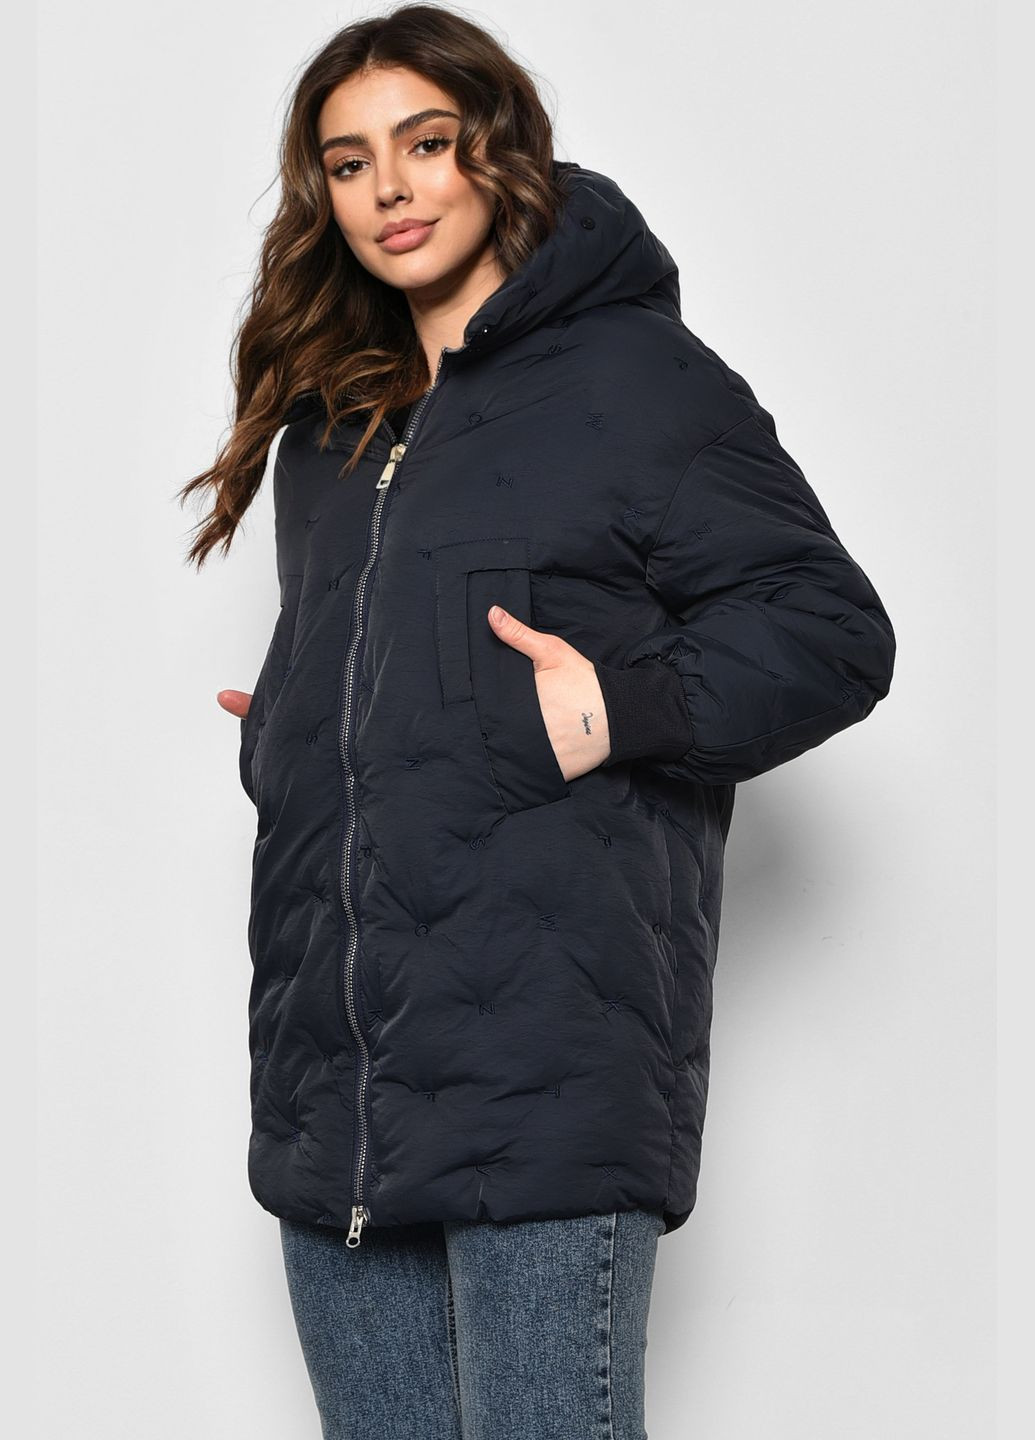 Темно-синяя зимняя куртка женская еврозима темно-синего цвета Let's Shop